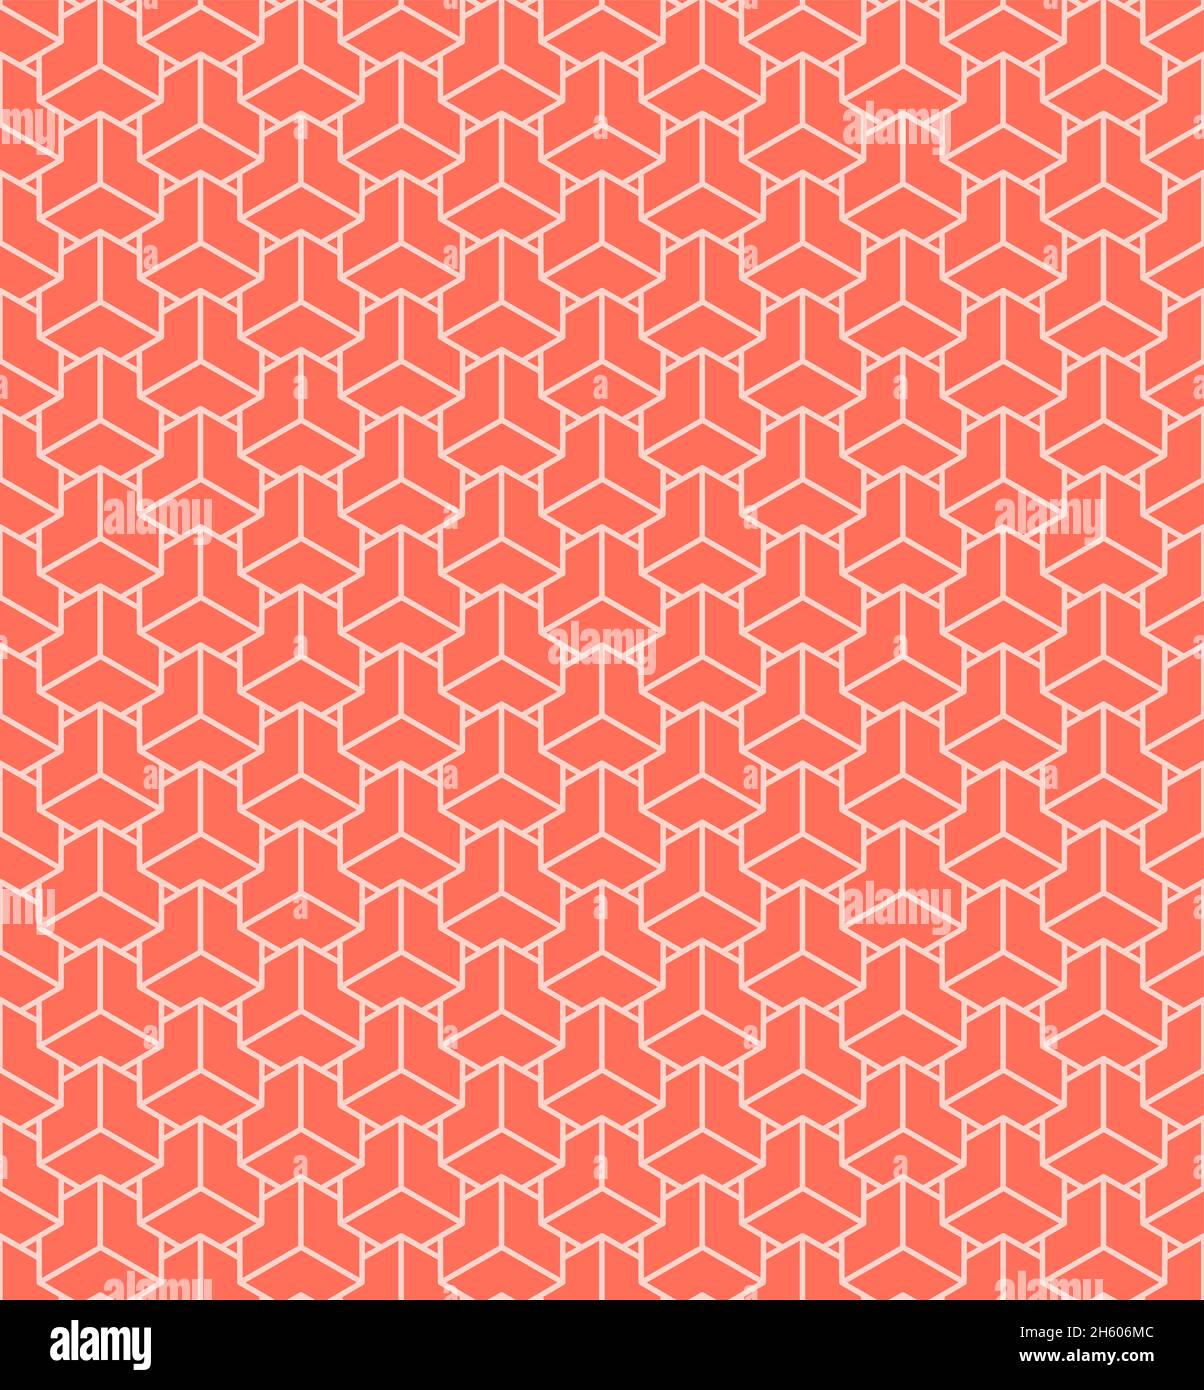 Motif vectoriel sans couture, style minimaliste en mosaïque avec couleurs corail et rose.Arrière-plan avec un motif géométrique et des cubes roses Banque D'Images